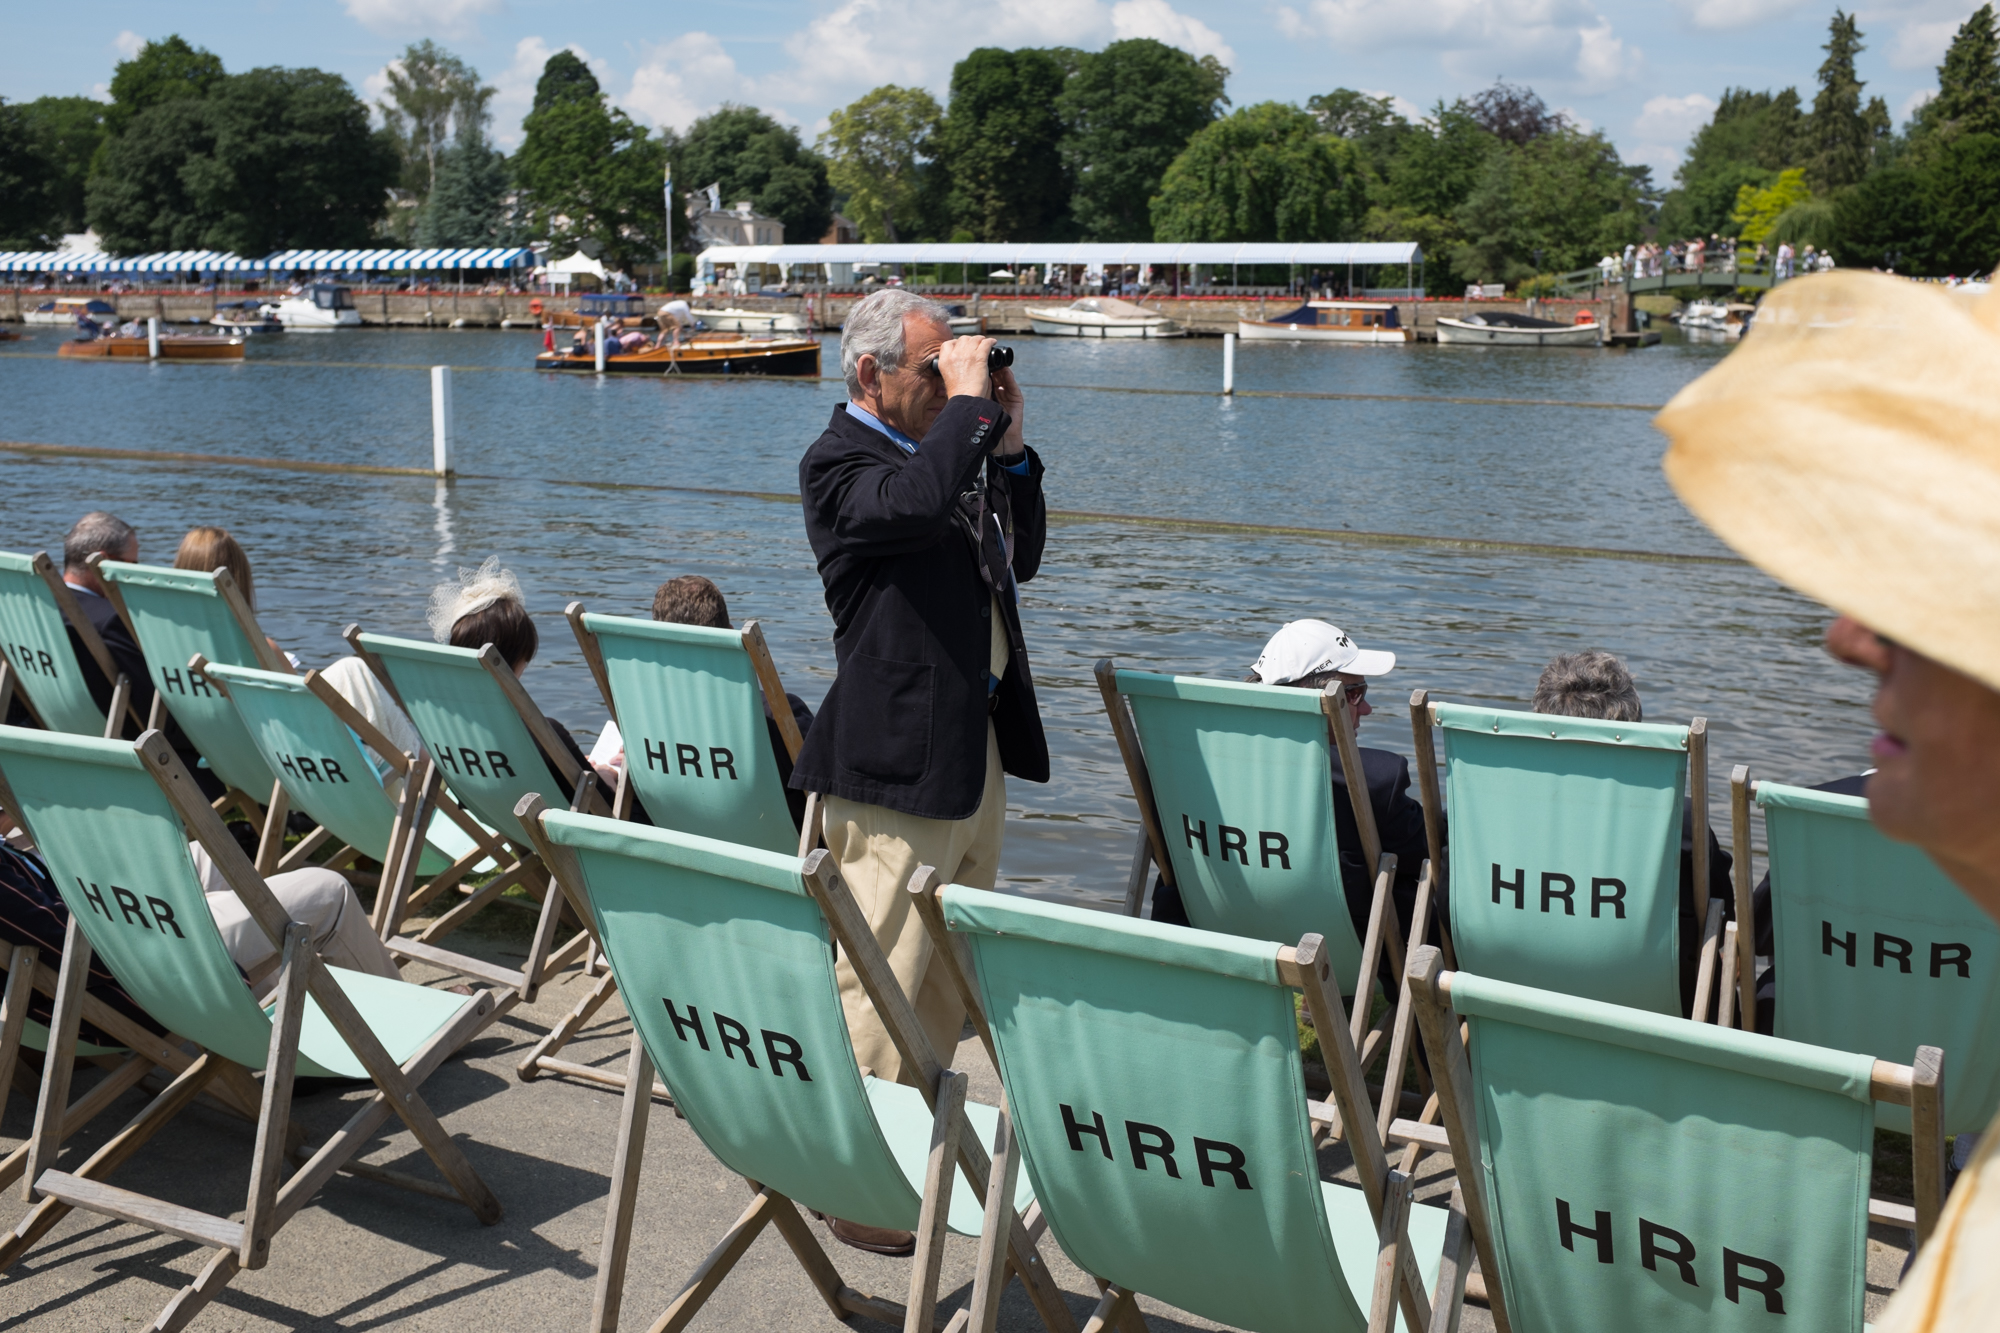  A spectator at Henley Royal Regatta surveys the course. 